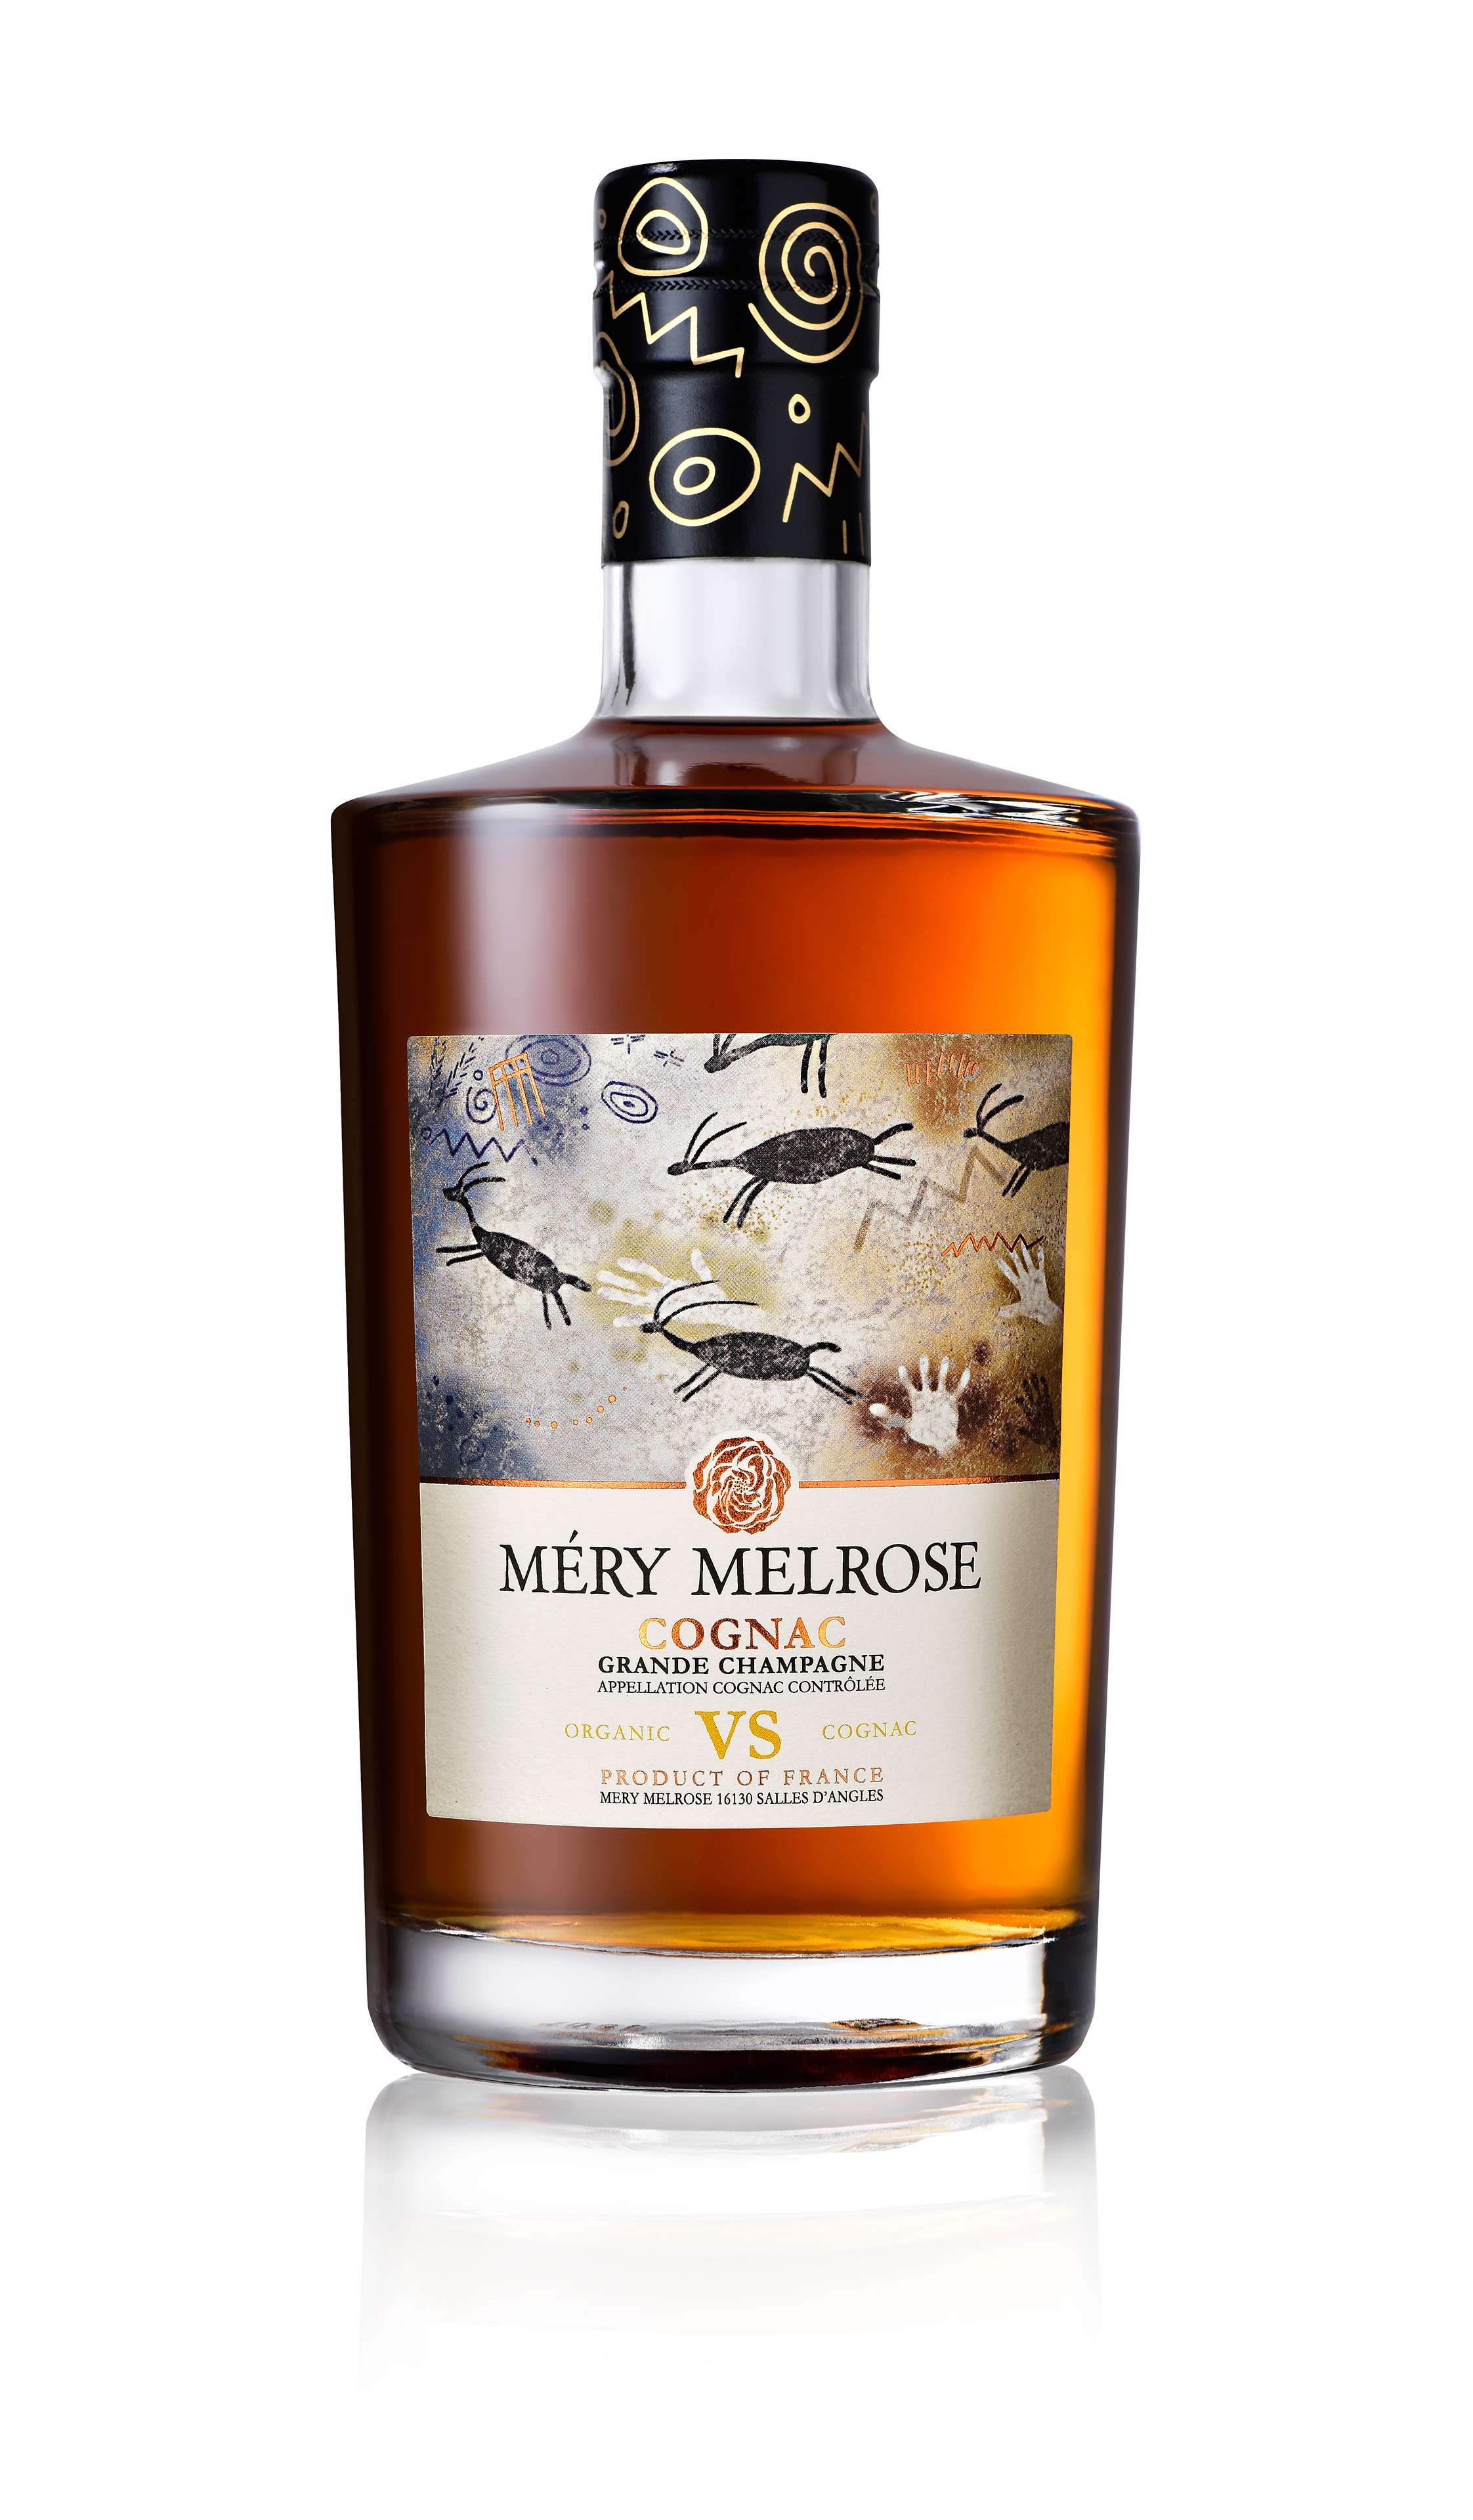 Mery Melrose Cognac VS